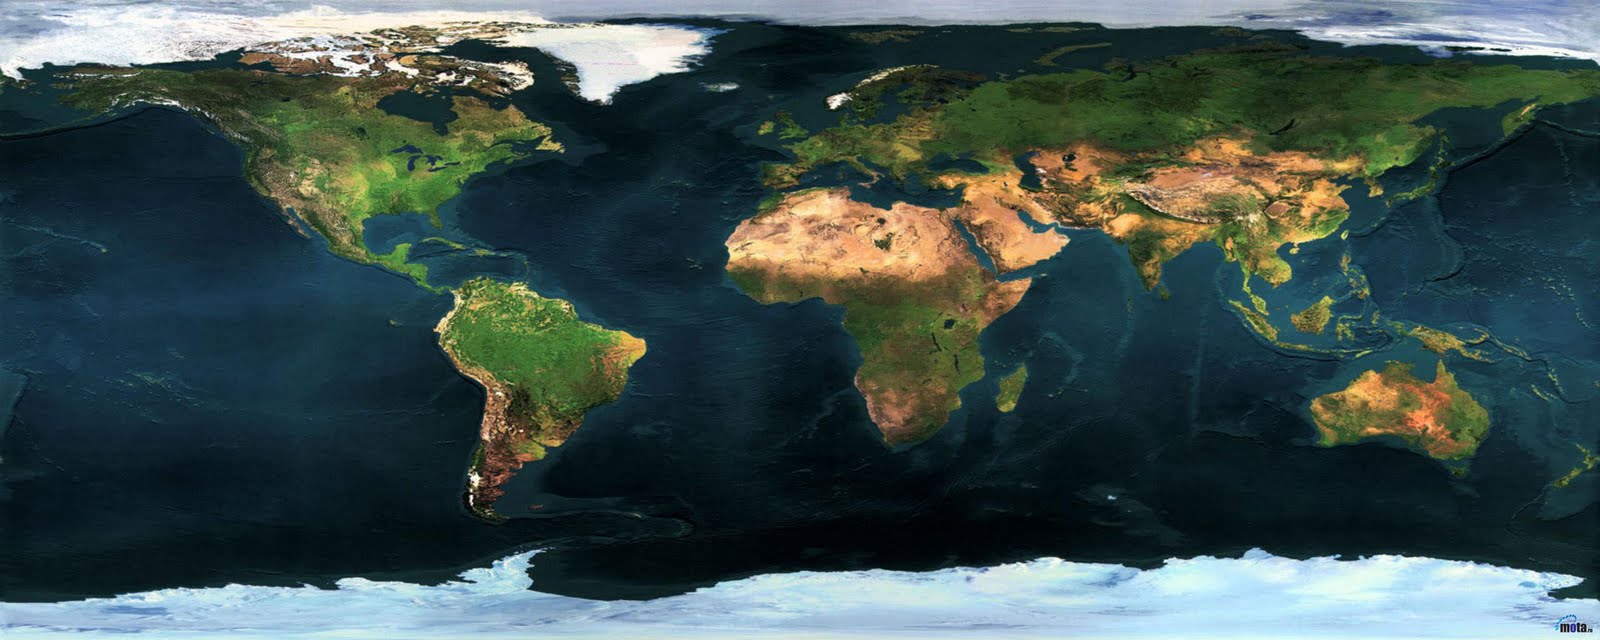 fond d'écran mapa,la nature,l'eau,terre,ressources en eau,monde